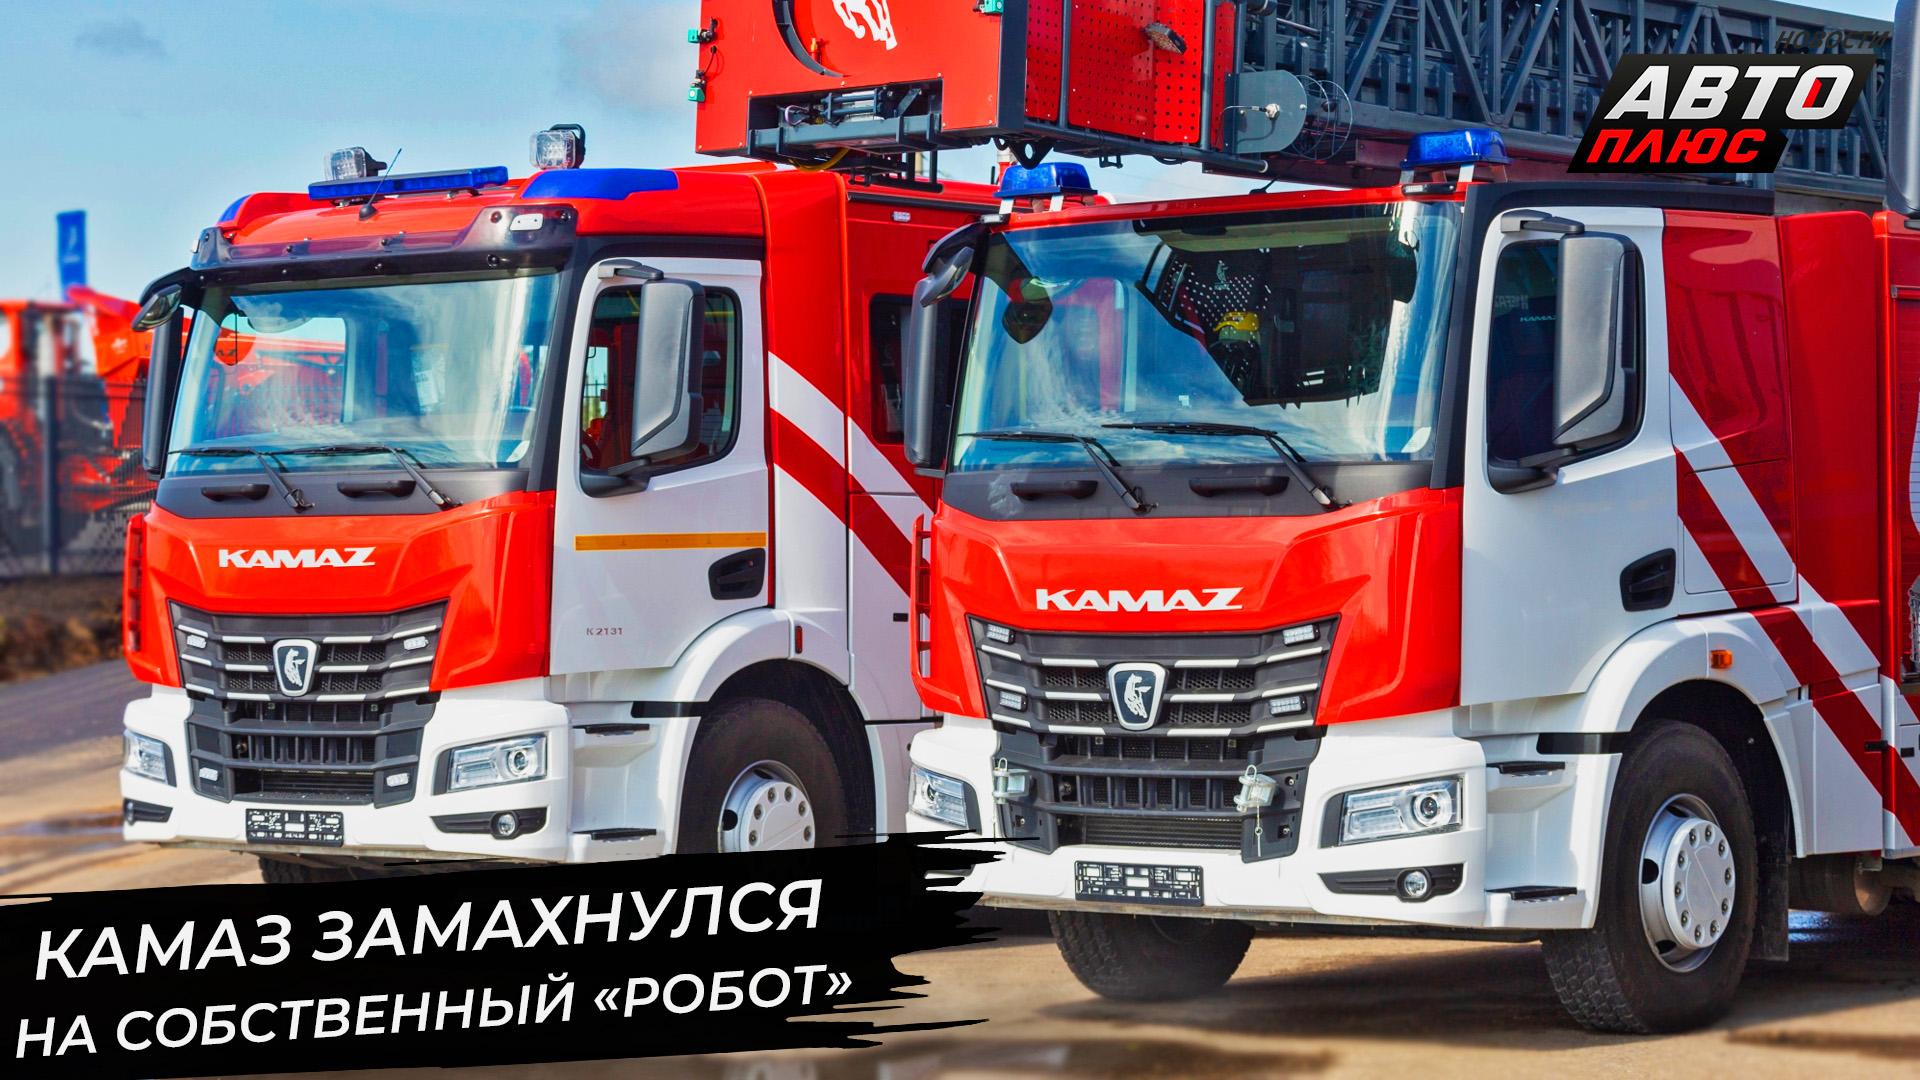 КамАЗ испытывает собственный «робот». БАЗ освоит мощности завода MAN-Scania 📺 Новости с колёс №2958